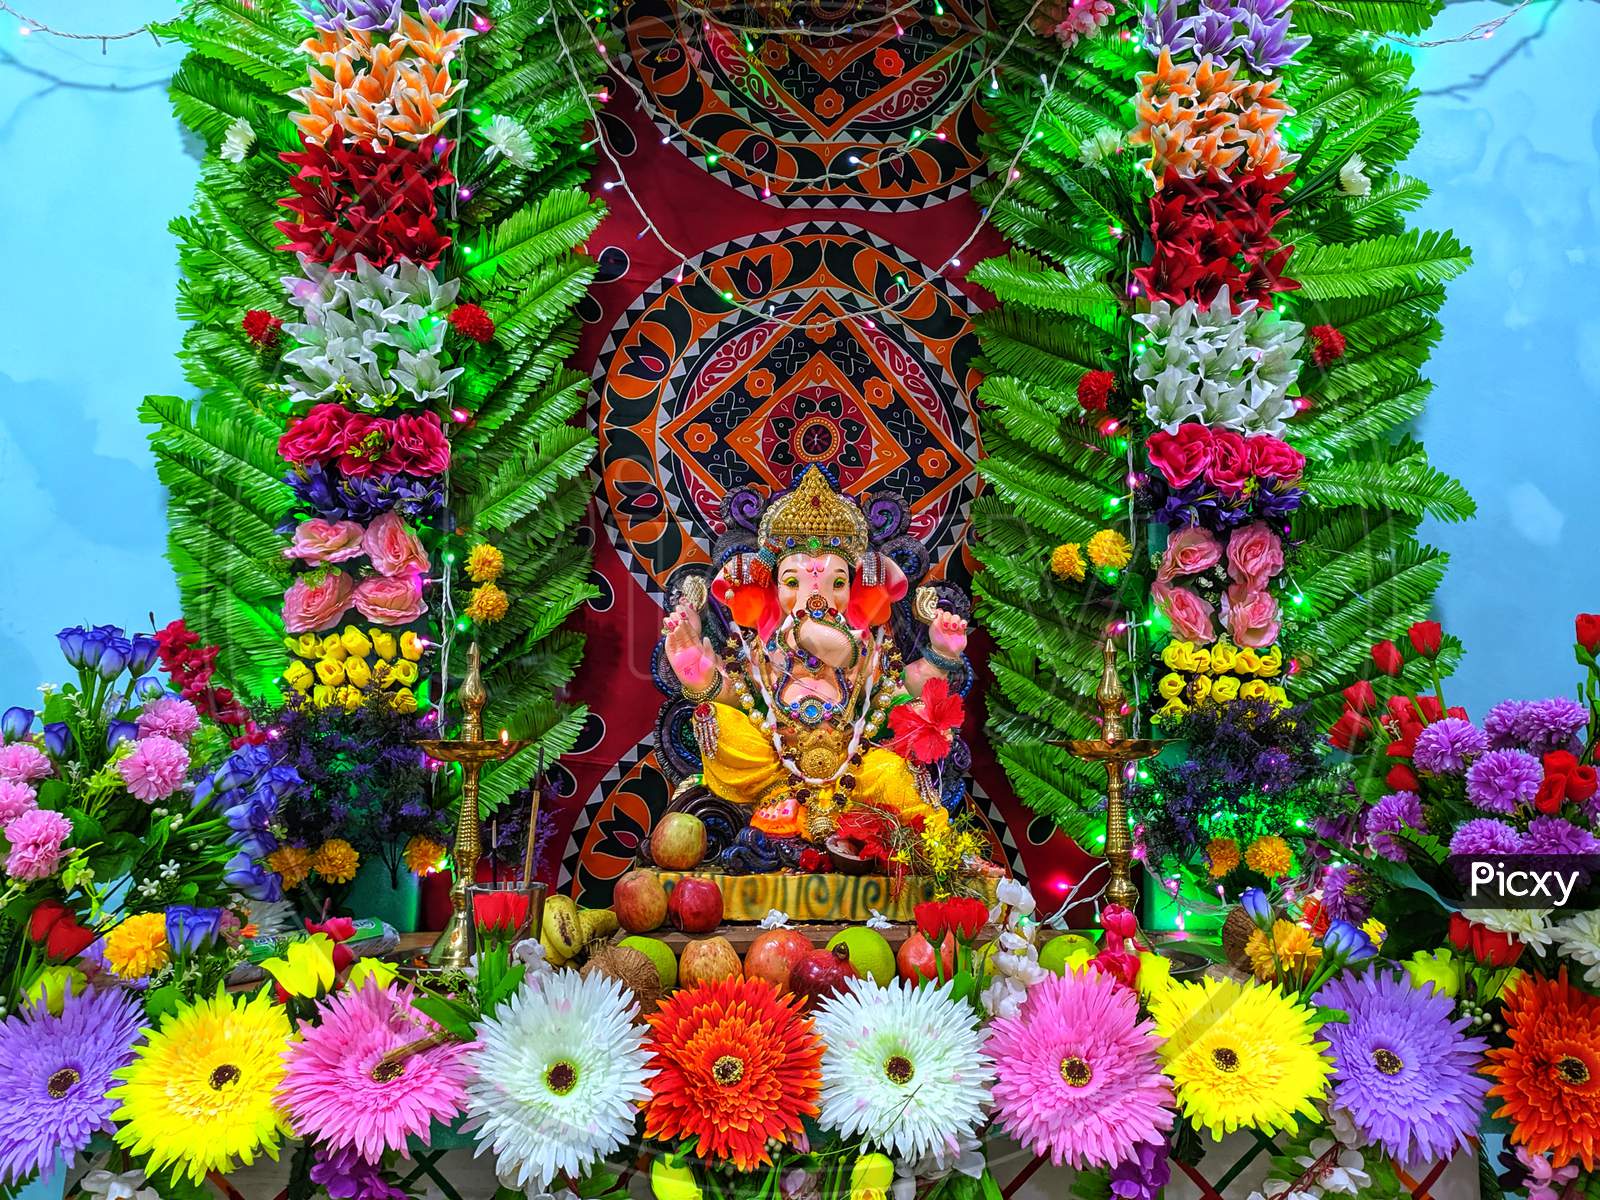 A eco friendly decoration for lord Ganesha festivity